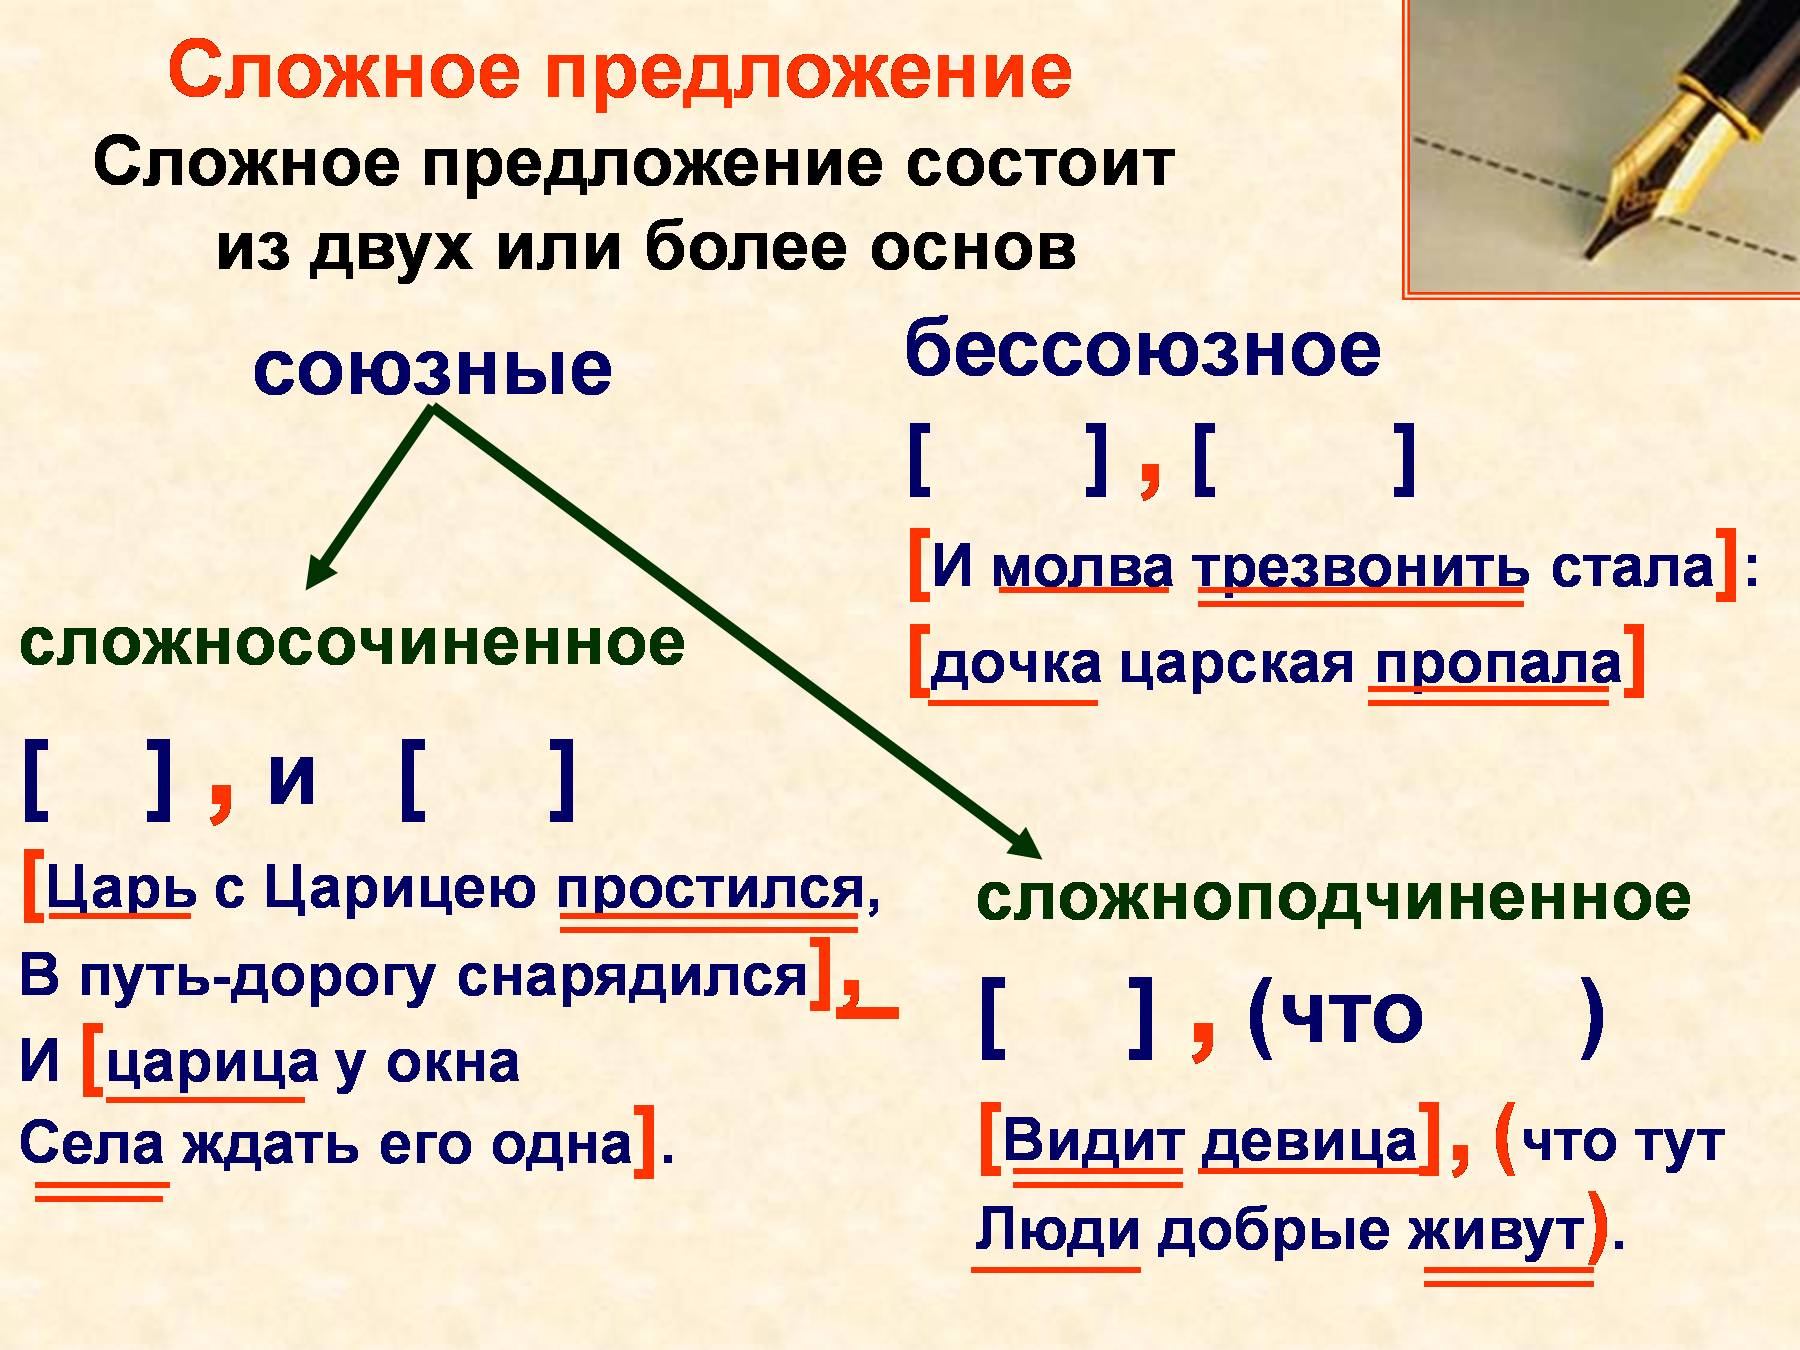 Поворот какое предложение. Что такое сложное предложение 4 класс правило в русском языке. Из чего состоит сложное предложение в русском языке. Синтаксис сложного предложения. Слоржныеп предложения.